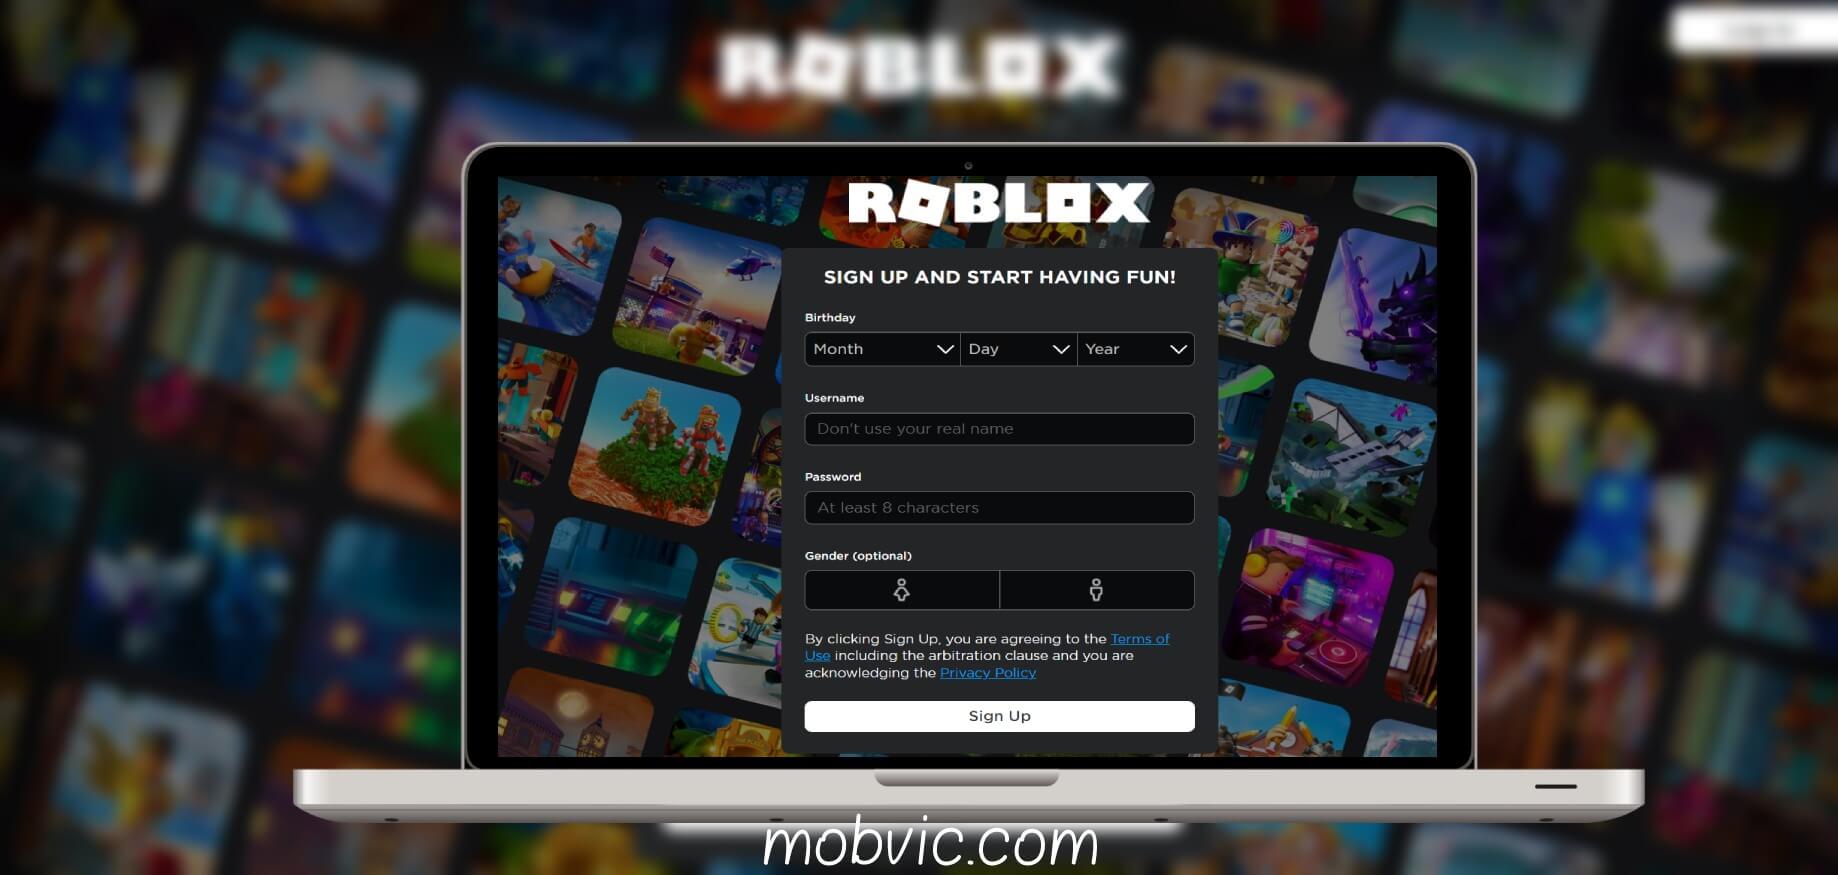 لعبة roblox بدون تنزيل لعبة roblox بدون تحميل لعبة Roblox اون لاين لعبة Roblox تحميل تحميل لعبة Roblox للكمبيوتر مجانا تحميل لعبة roblox للكمبيوتر مجانا 2020 كيف تلعب roblox على الكمبيوتر بدون تحميل لعبة roblox بدون تحميل للجوال طريقة تحميل لعبة roblox تحميل لعبة Roblox للايفون لعبة Roblox تنزيل لعبة Roblox اون لاين تحميل لعبة Roblox للكمبيوتر مجانا تحميل لعبة roblox للكمبيوتر مجانا 2020 تحميل لعبة Roblox 2020 تحميل لعبة roblox بدون مشاكل لعبة roblox بدون تحميل للجوال طريقة تحميل لعبة roblox